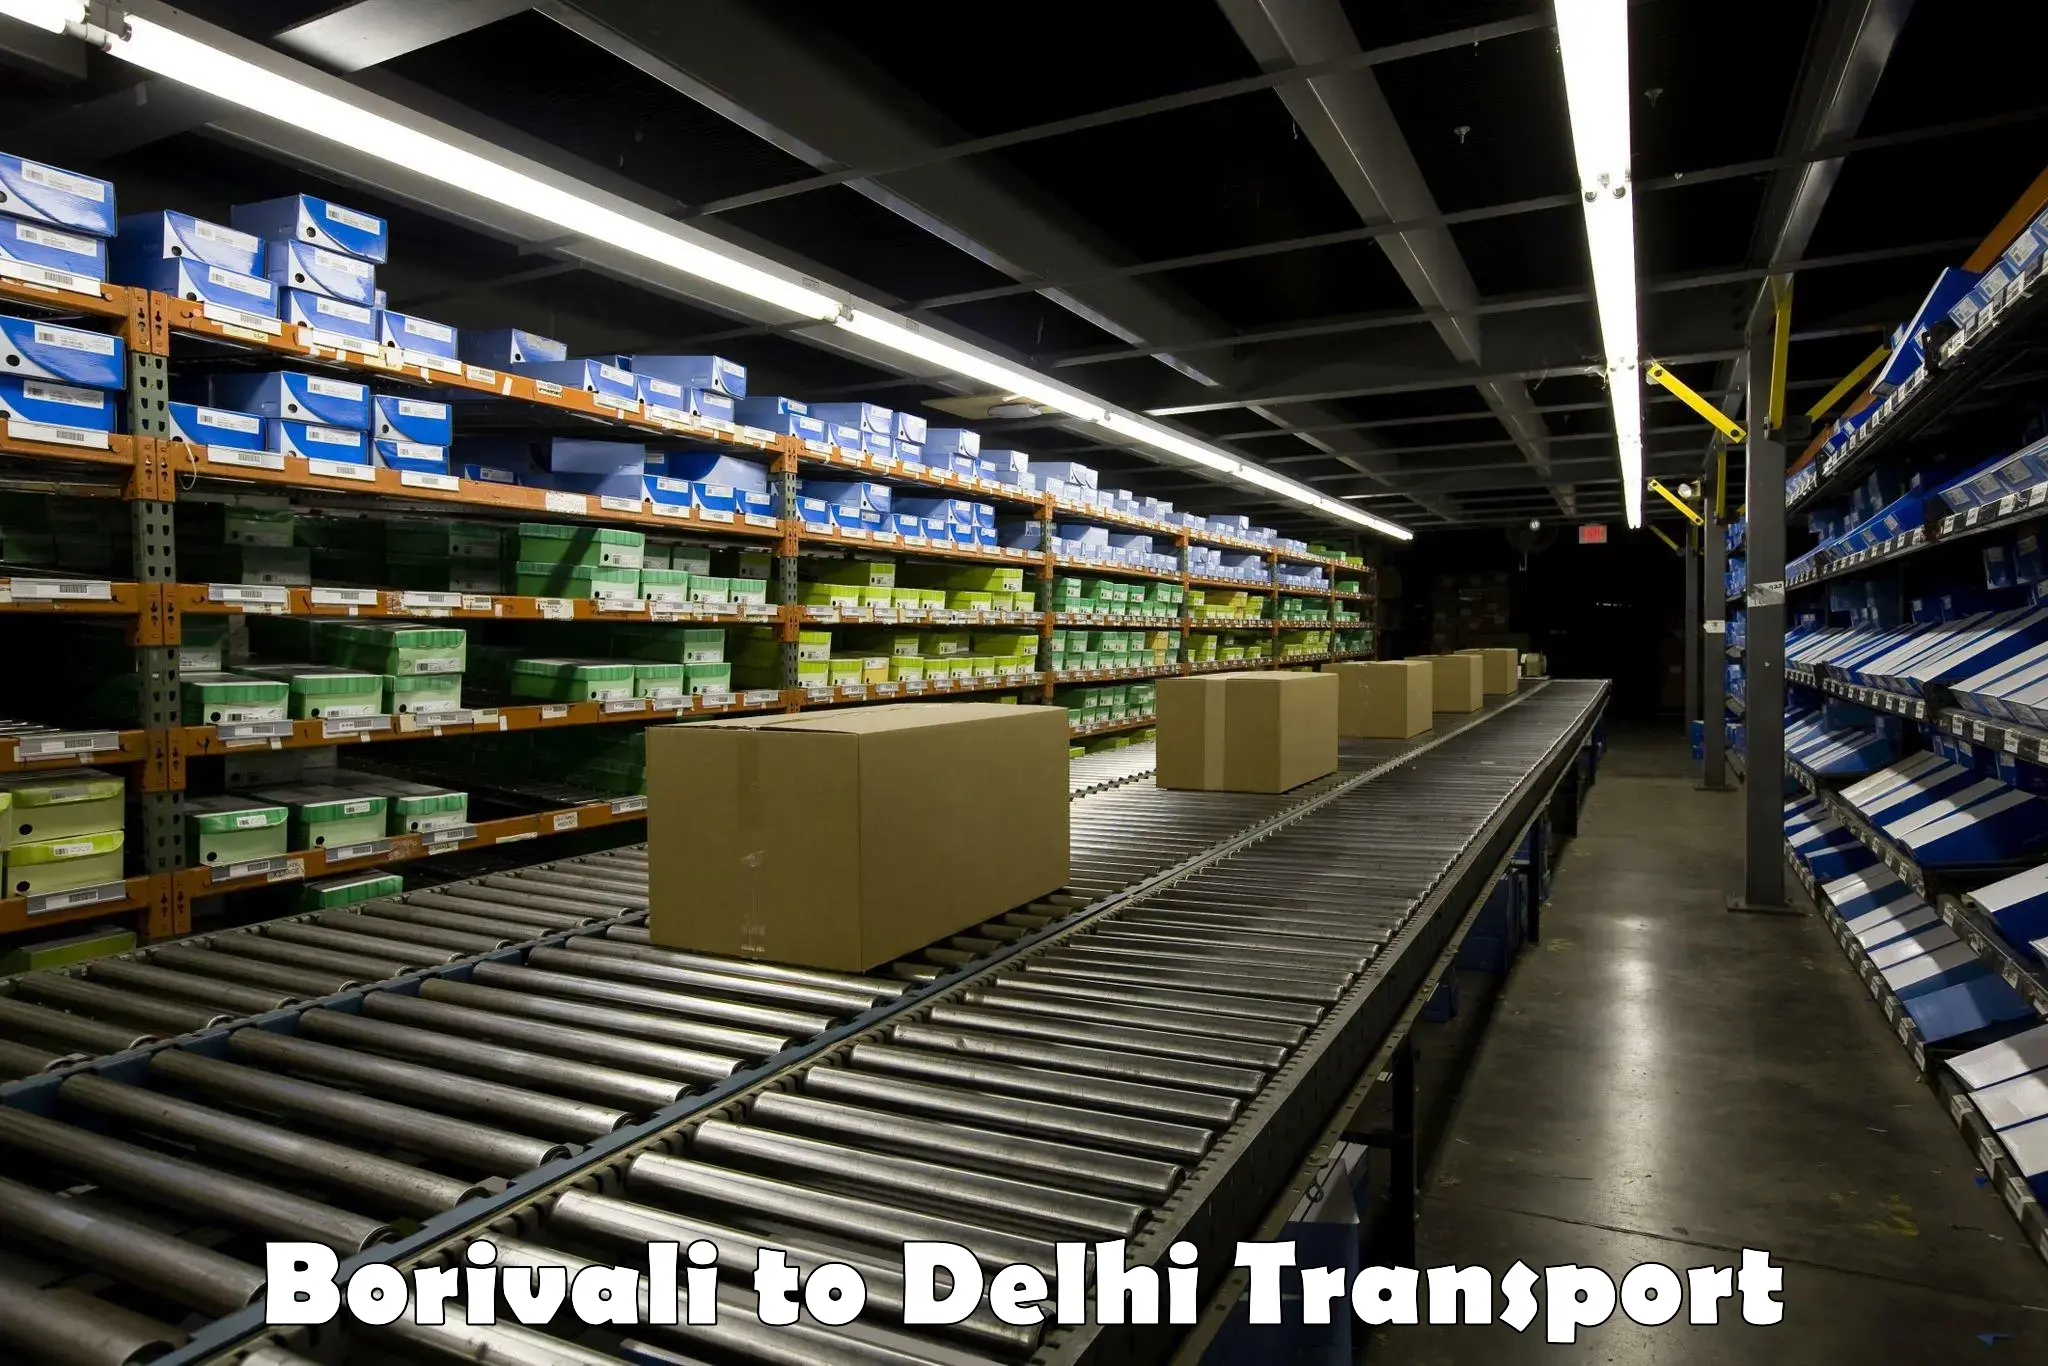 Truck transport companies in India Borivali to Delhi